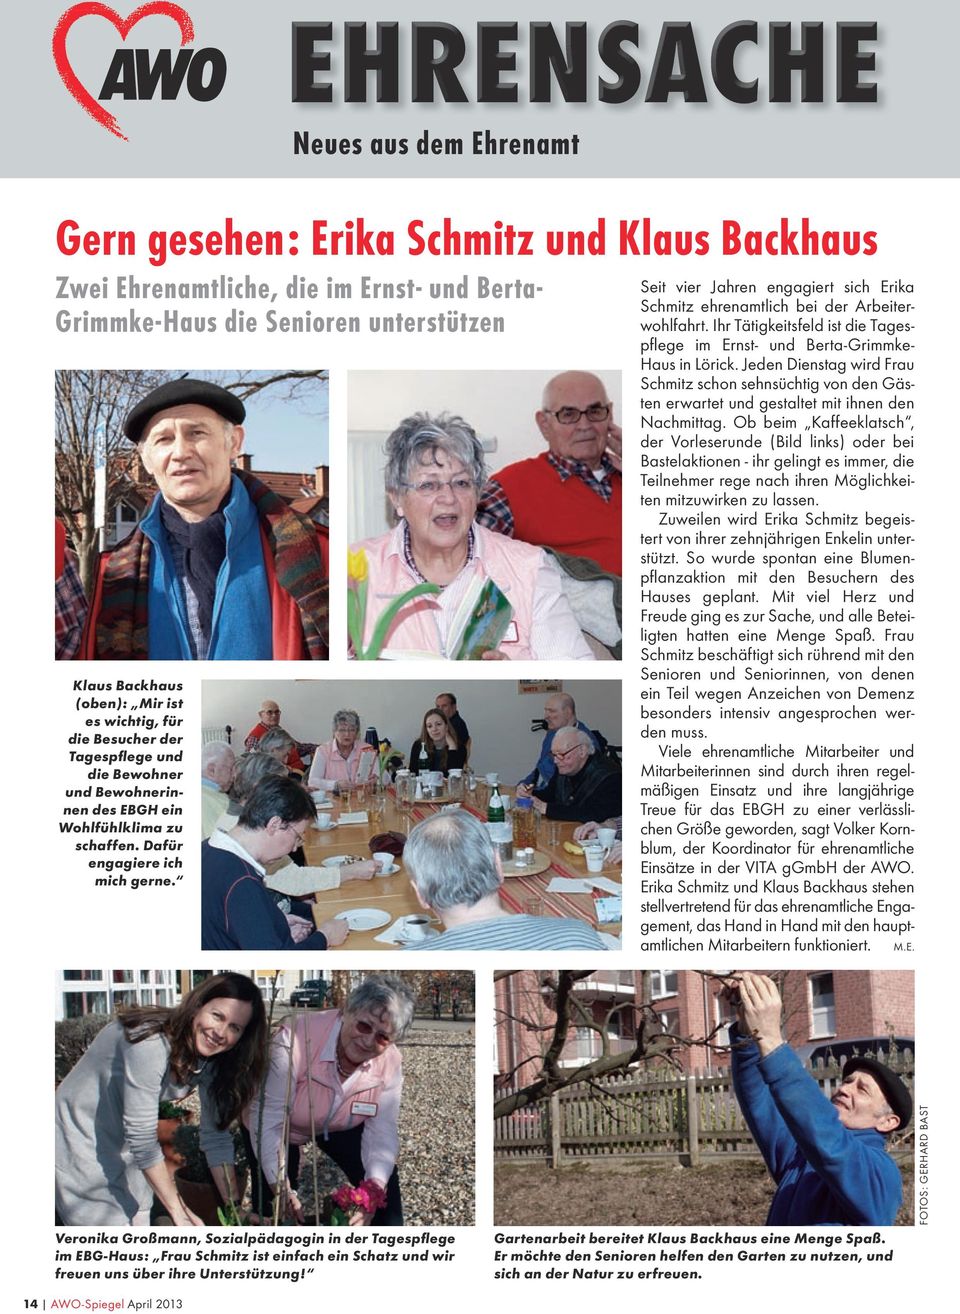 Seit vier Jahren engagiert sich Erika Schmitz ehrenamtlich bei der Arbeiterwohlfahrt. Ihr Tätigkeitsfeld ist die Tagespflege im Ernst- und Berta-Grimmke- Haus in Lörick.